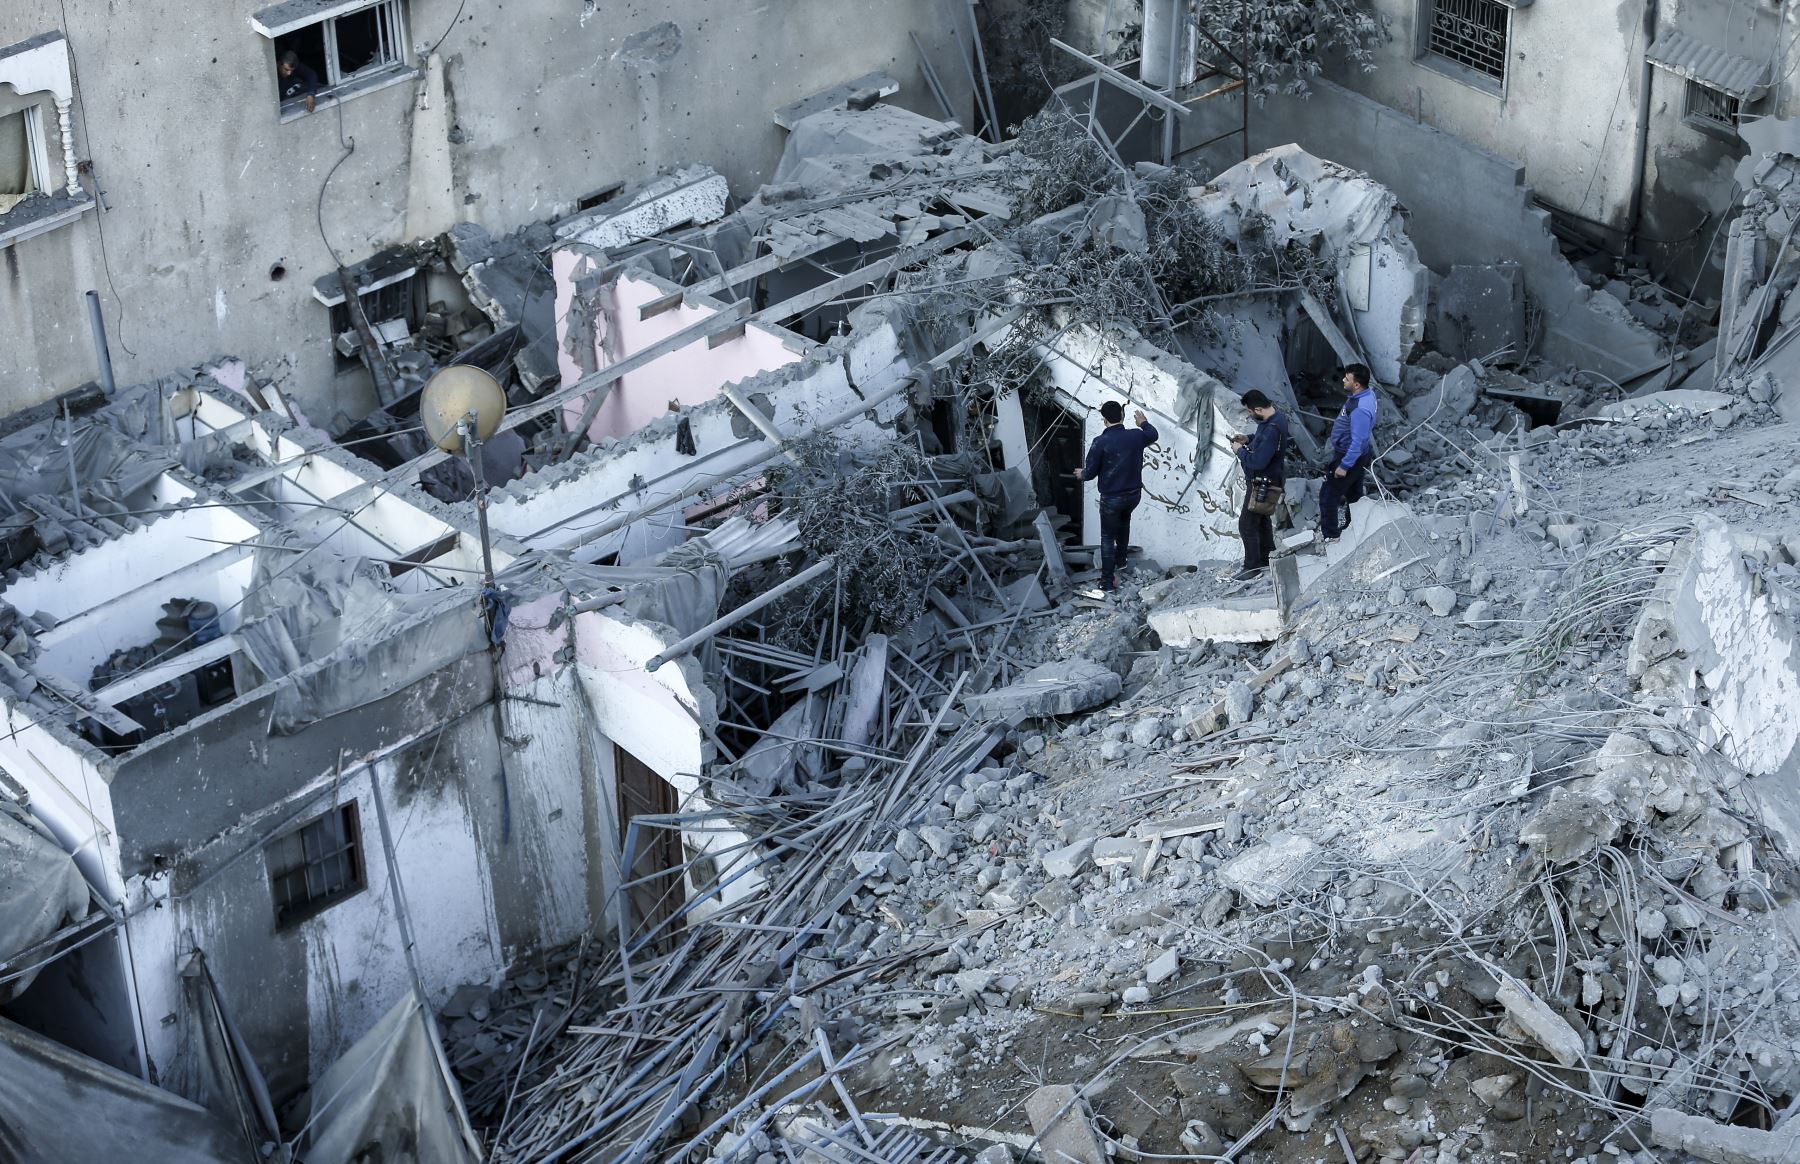 Los palestinos inspeccionan los daños en un vecindario residencial en la ciudad de Gaza a principios del 13 de noviembre de 2018, luego de los ataques aéreos israelíes contra el área durante la noche. - El avión de Israel impactó en Gaza el 12 de noviembre, matando a tres palestinos e hiriendo a nueve después de un bombardeo de cohetes en su territorio desde el enclave. El estallido se produjo después de una operación letal de las fuerzas especiales israelíes en la Franja de Gaza el fin de semana que dejó a